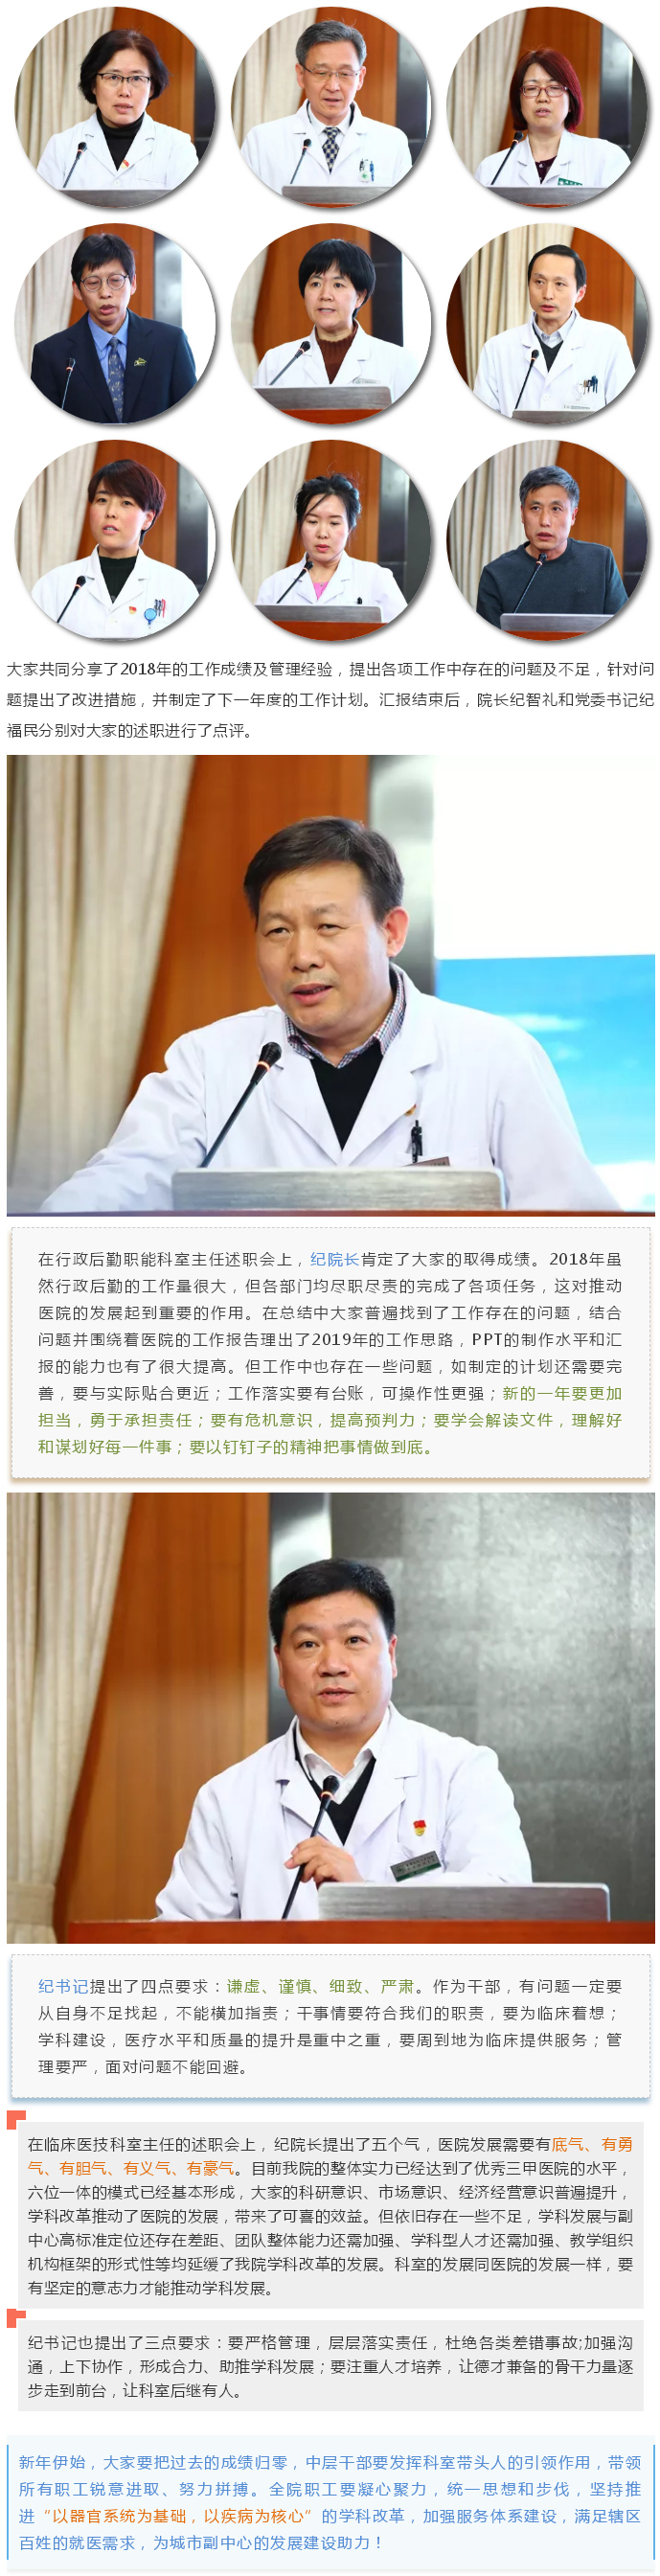 2018年潞河医院中层干部年终述职会2.jpg